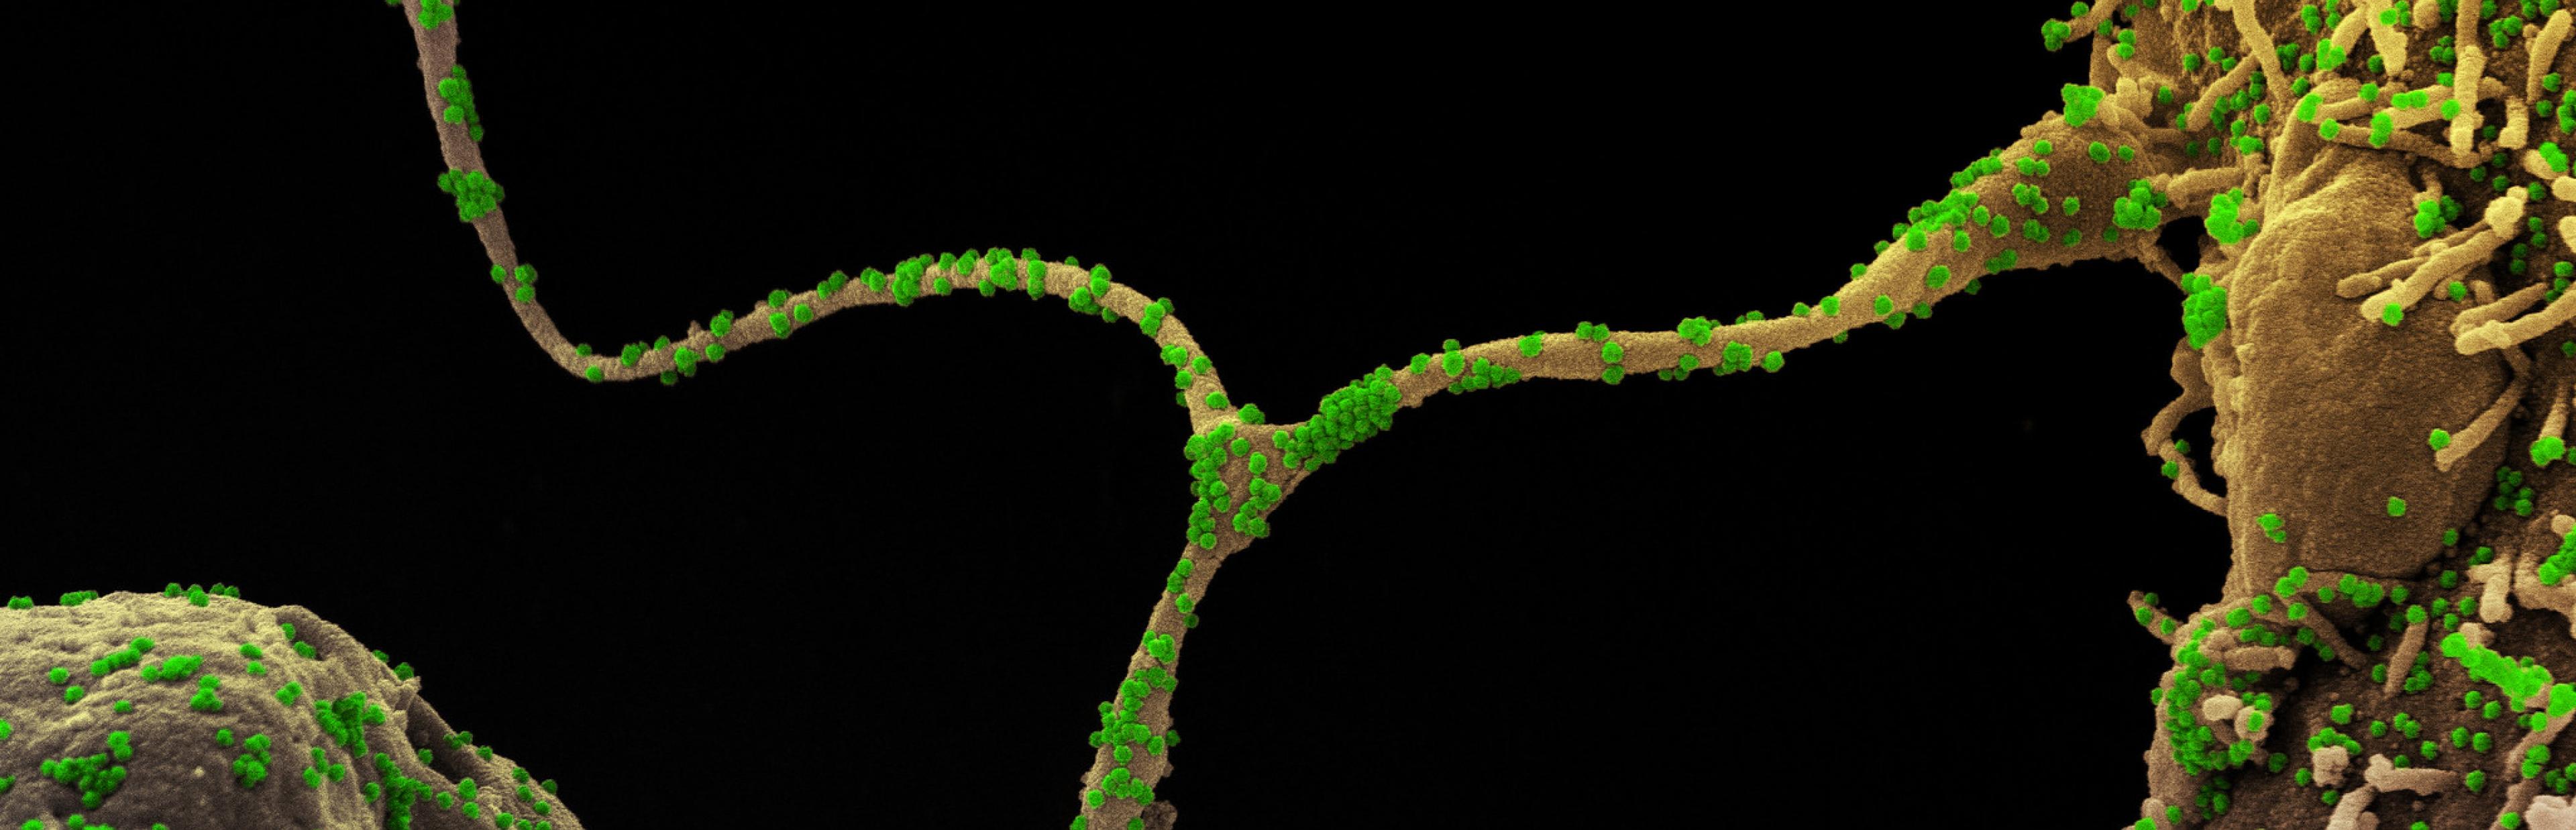 Das Foto zeigt eine elektronenmikroskopische Aufnahme von Coronaviren (grün) die Körperzellen (grau) infizieren.